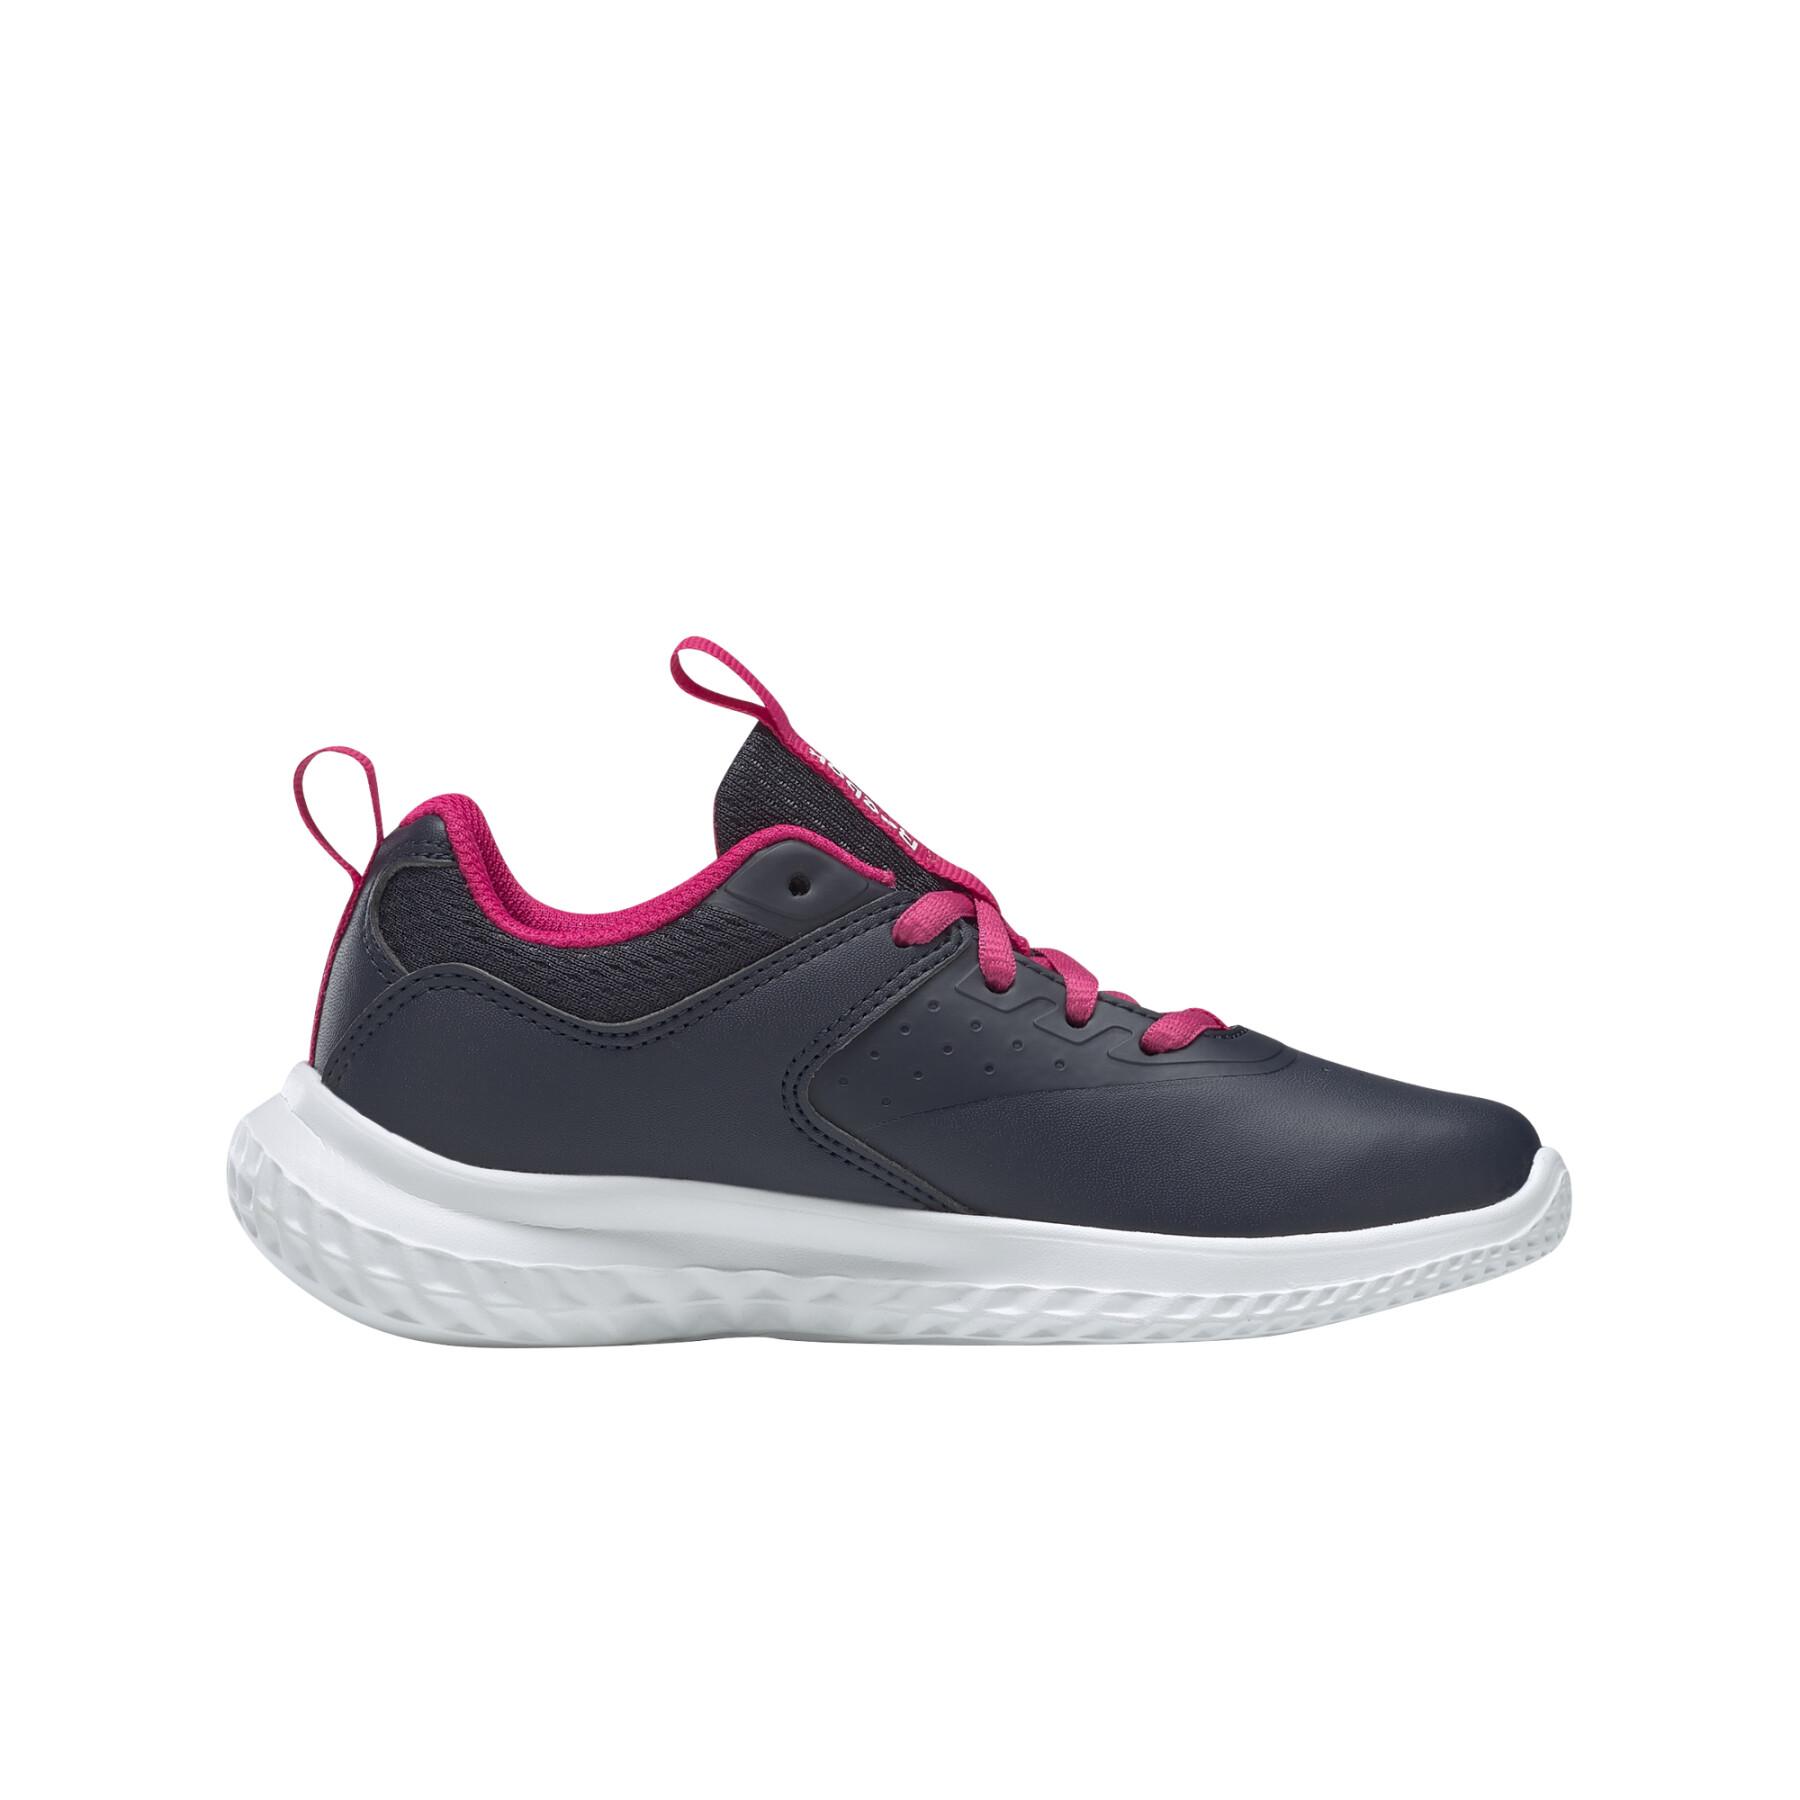 Schuhe für Mädchen Reebok rush runner 4.0 syn